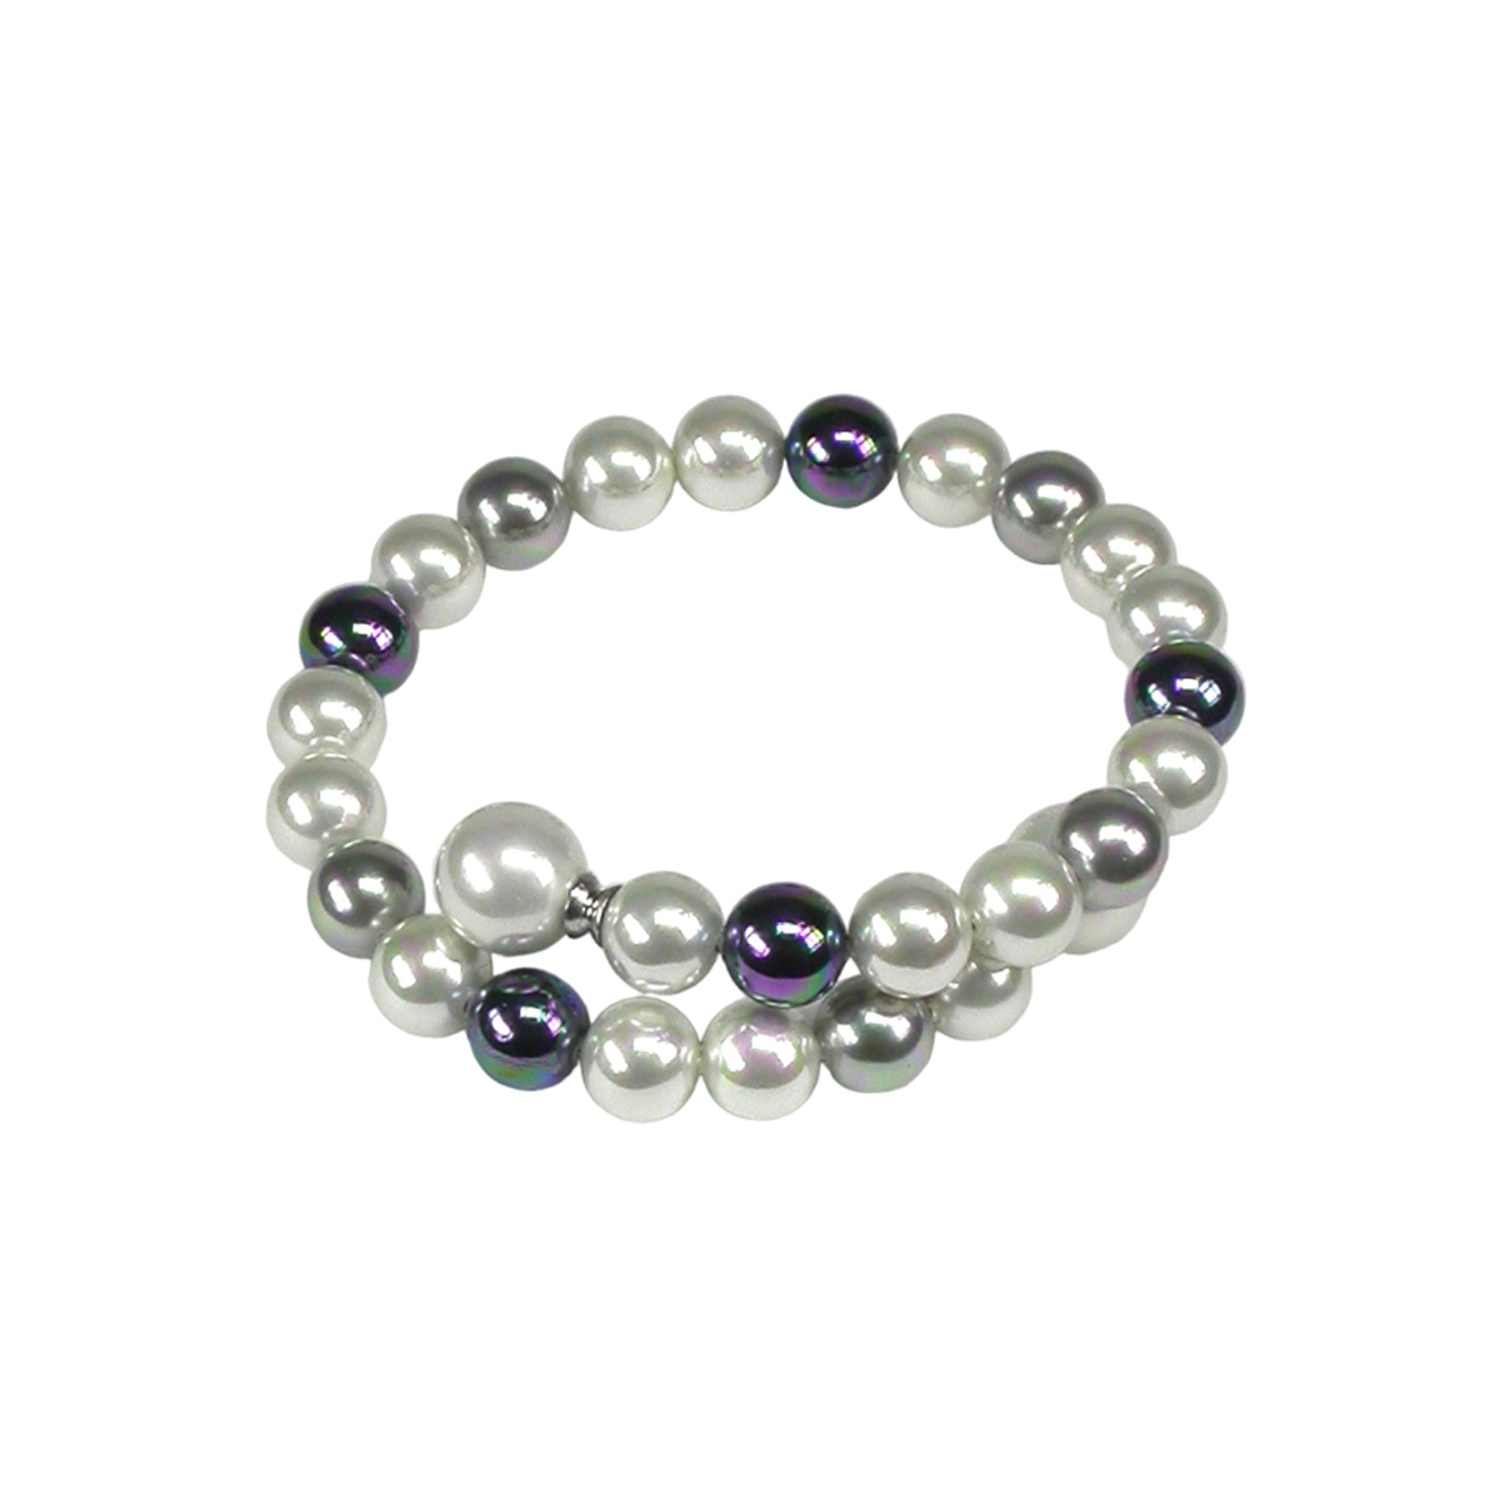 Armband mit Perlen in Weiss, Grau und Schwarz.